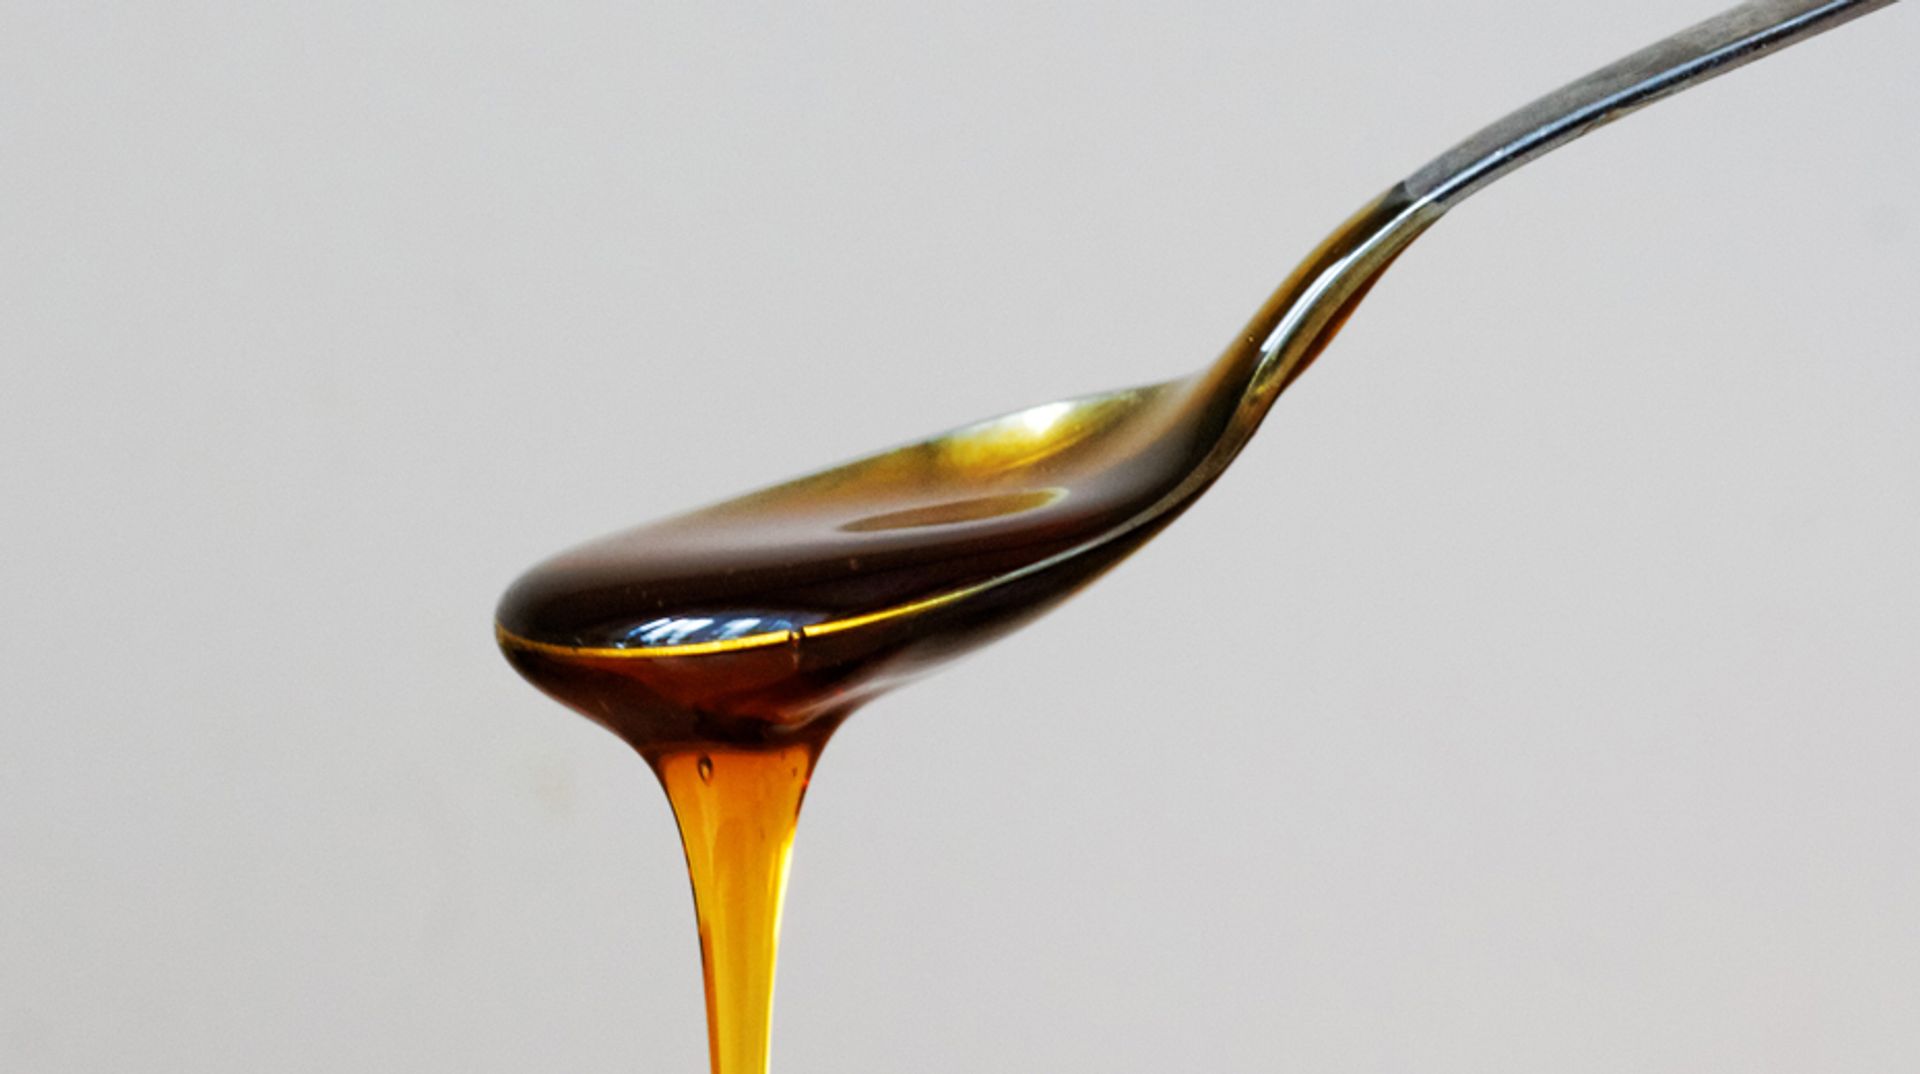 Vijf feiten en fabels over bijenproduct - Kassa - BNNVARA